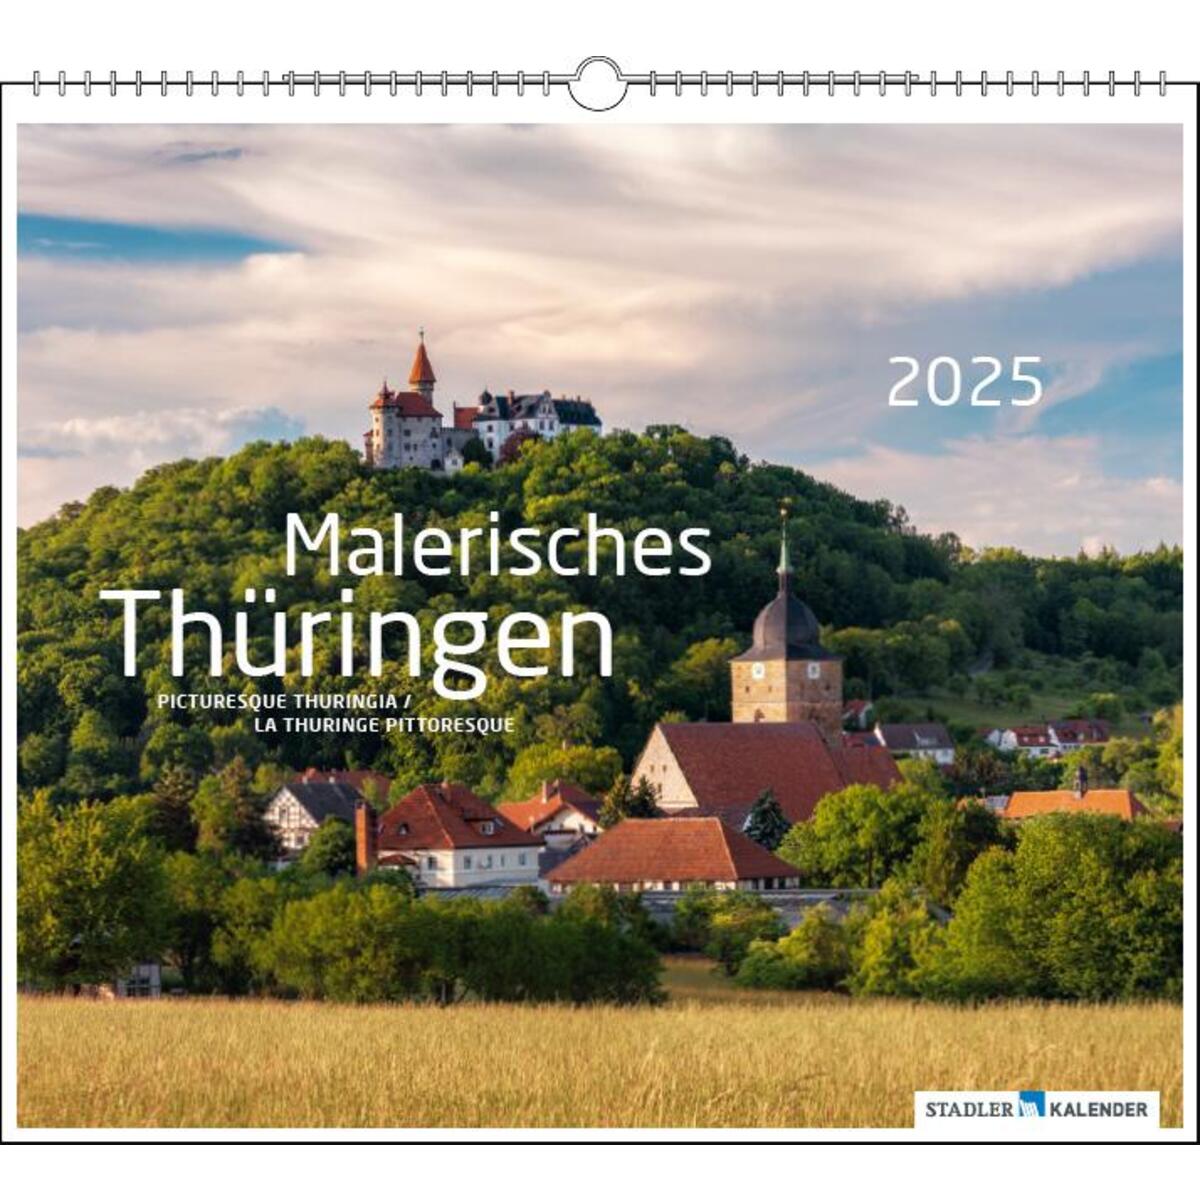 Malerisches Thüringen 2025 von Stadler Kalender